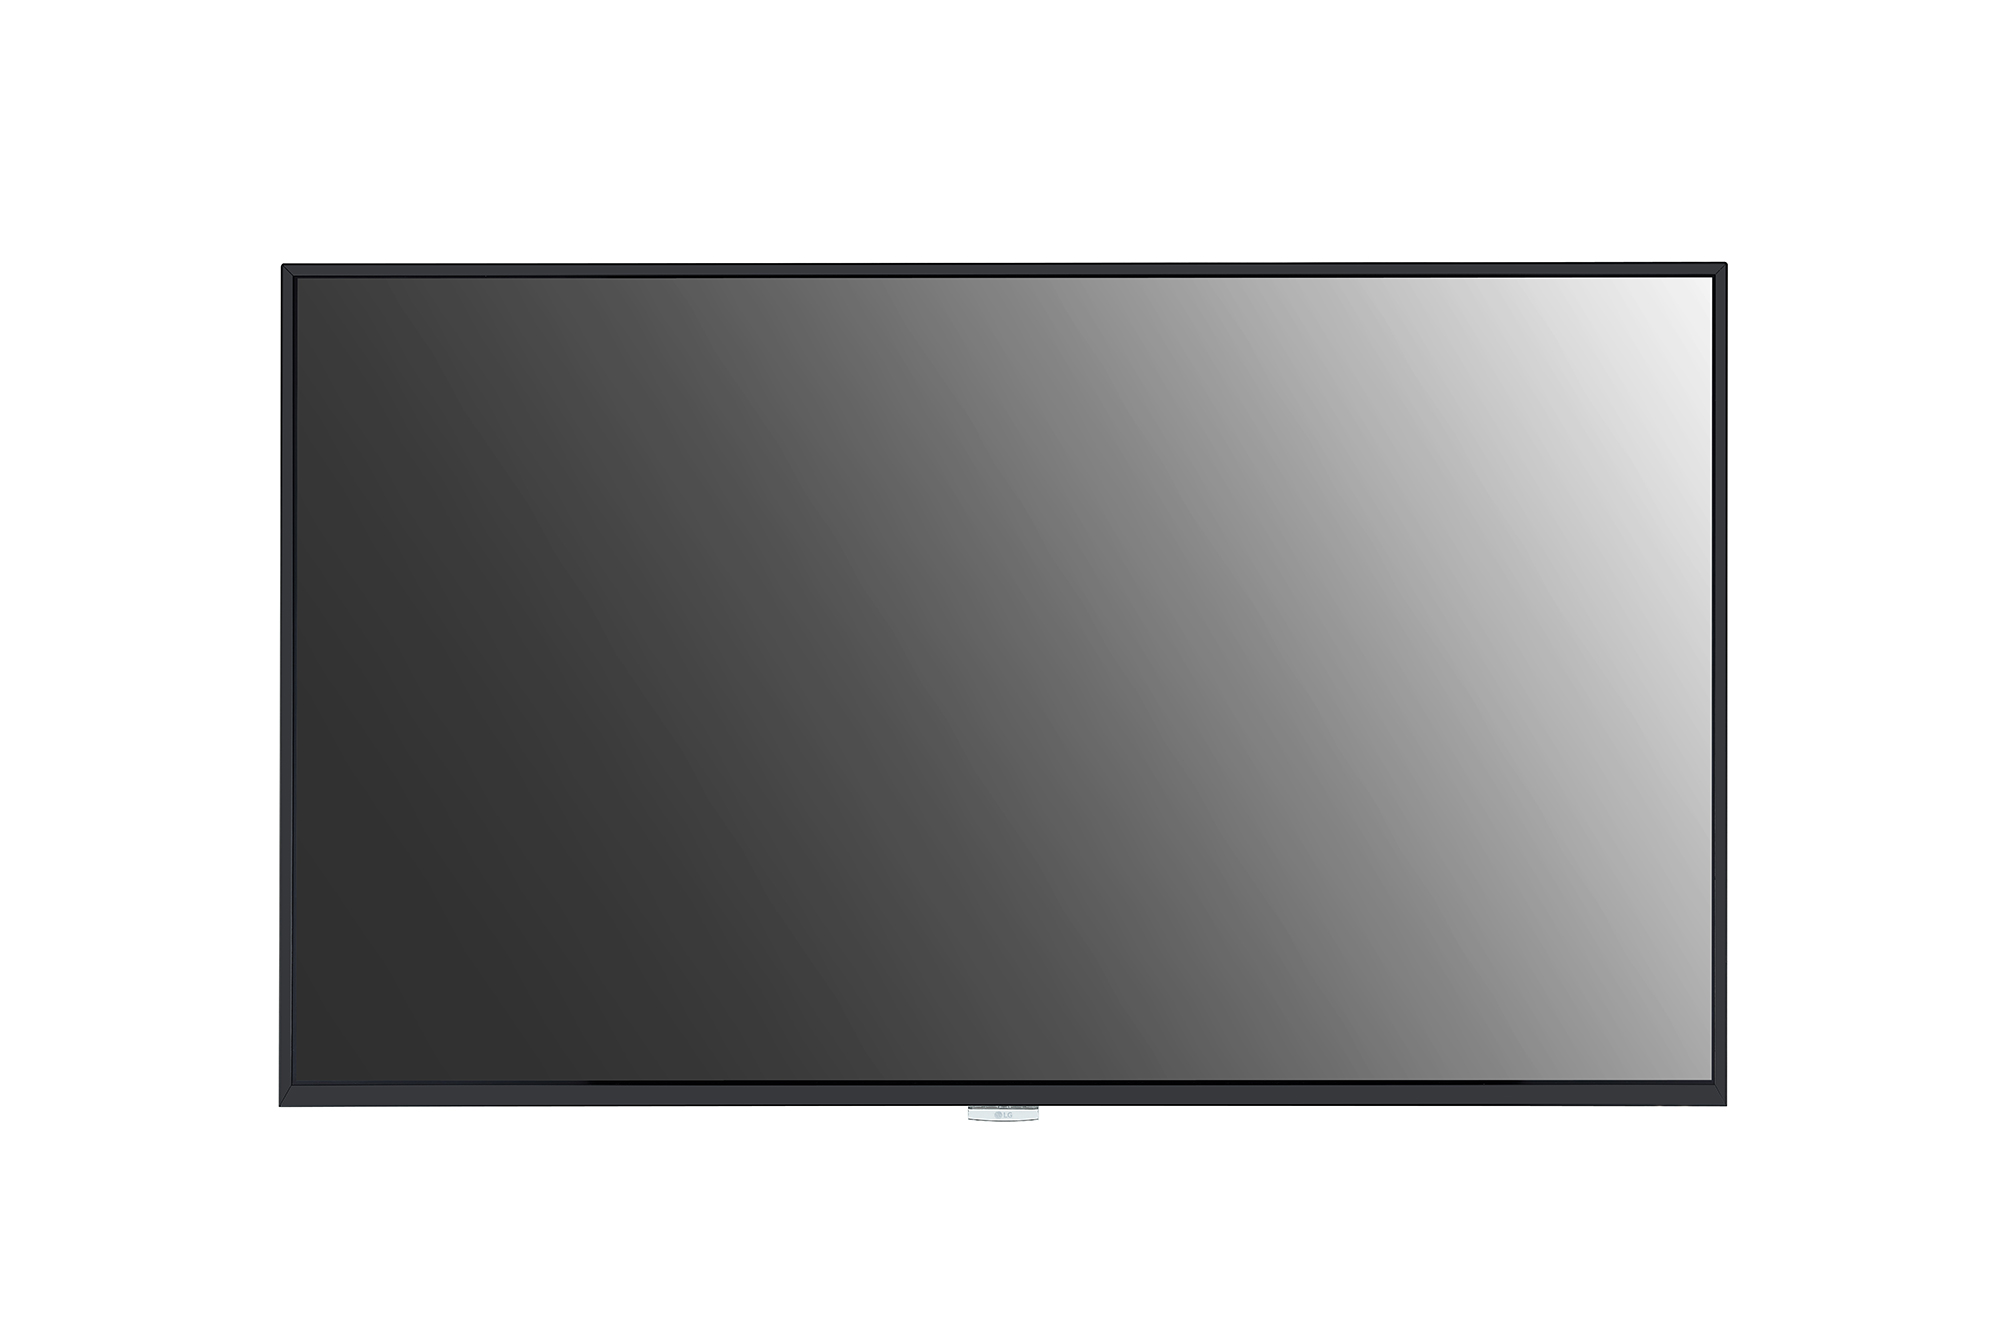 Экран телевизора название. ЖК панель LG 98uh5f. Панель LG 65uh5f-b. ЖК панель LG 55uh5c-b. Led панель LG 32sm5ke-b.